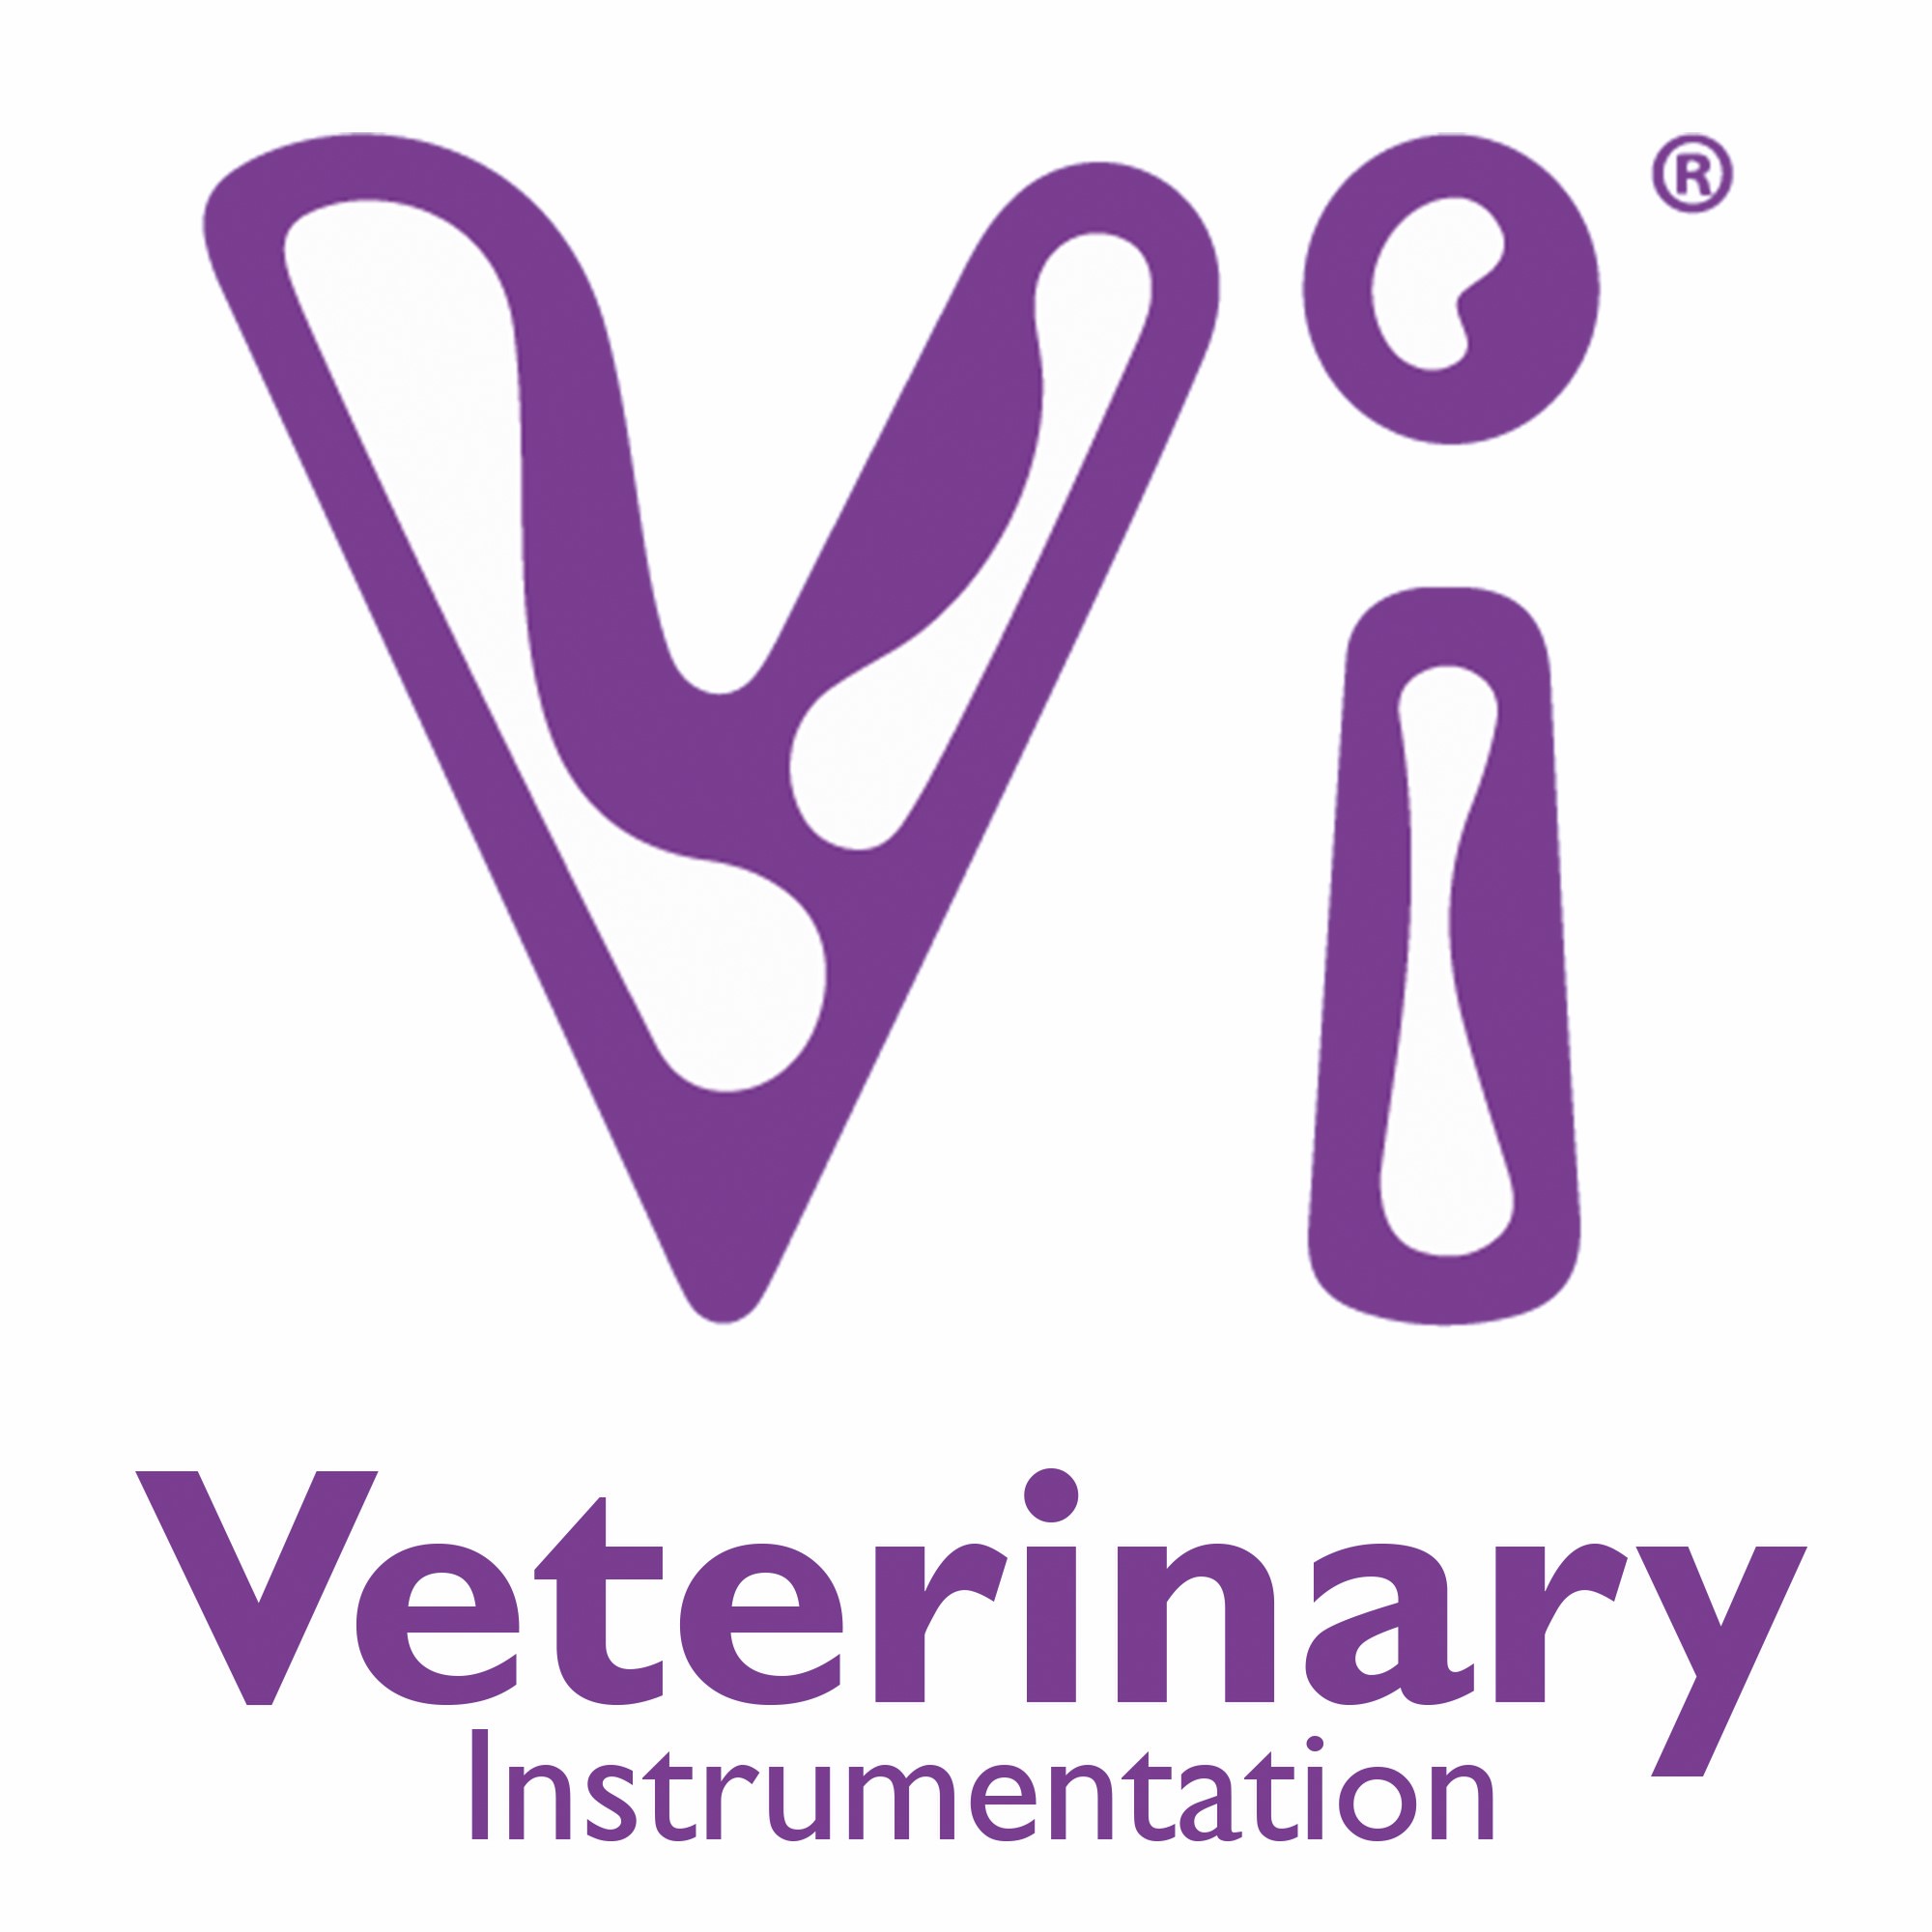 (c) Veterinary-instrumentation.com.au